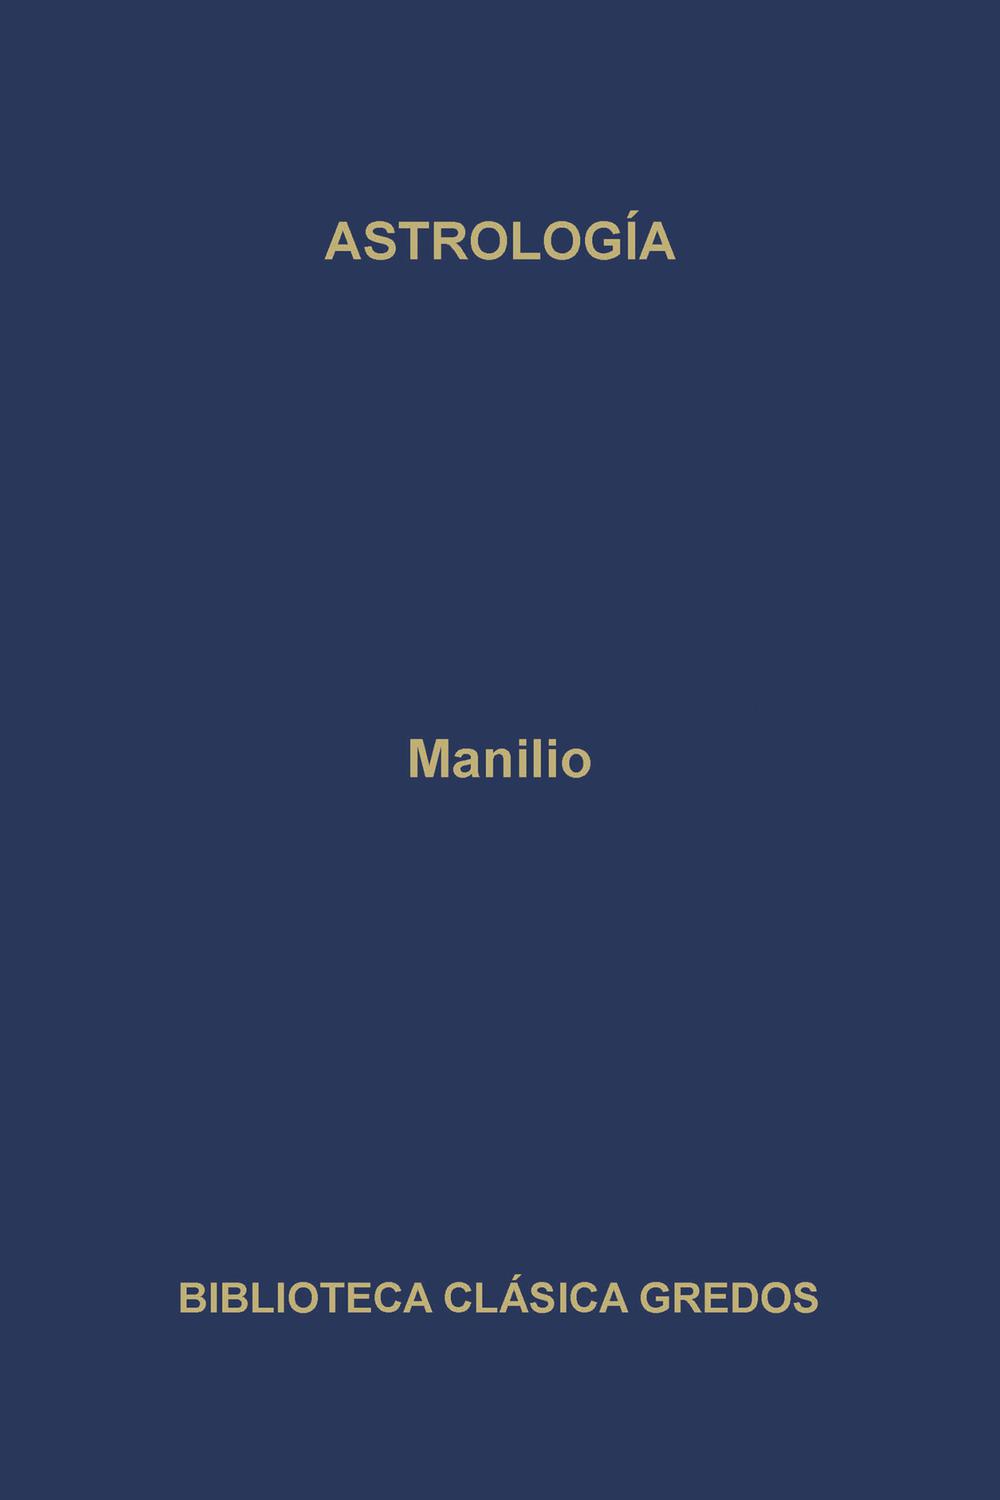 Astrología - Manilio, Francisco Calero, María José Echarte